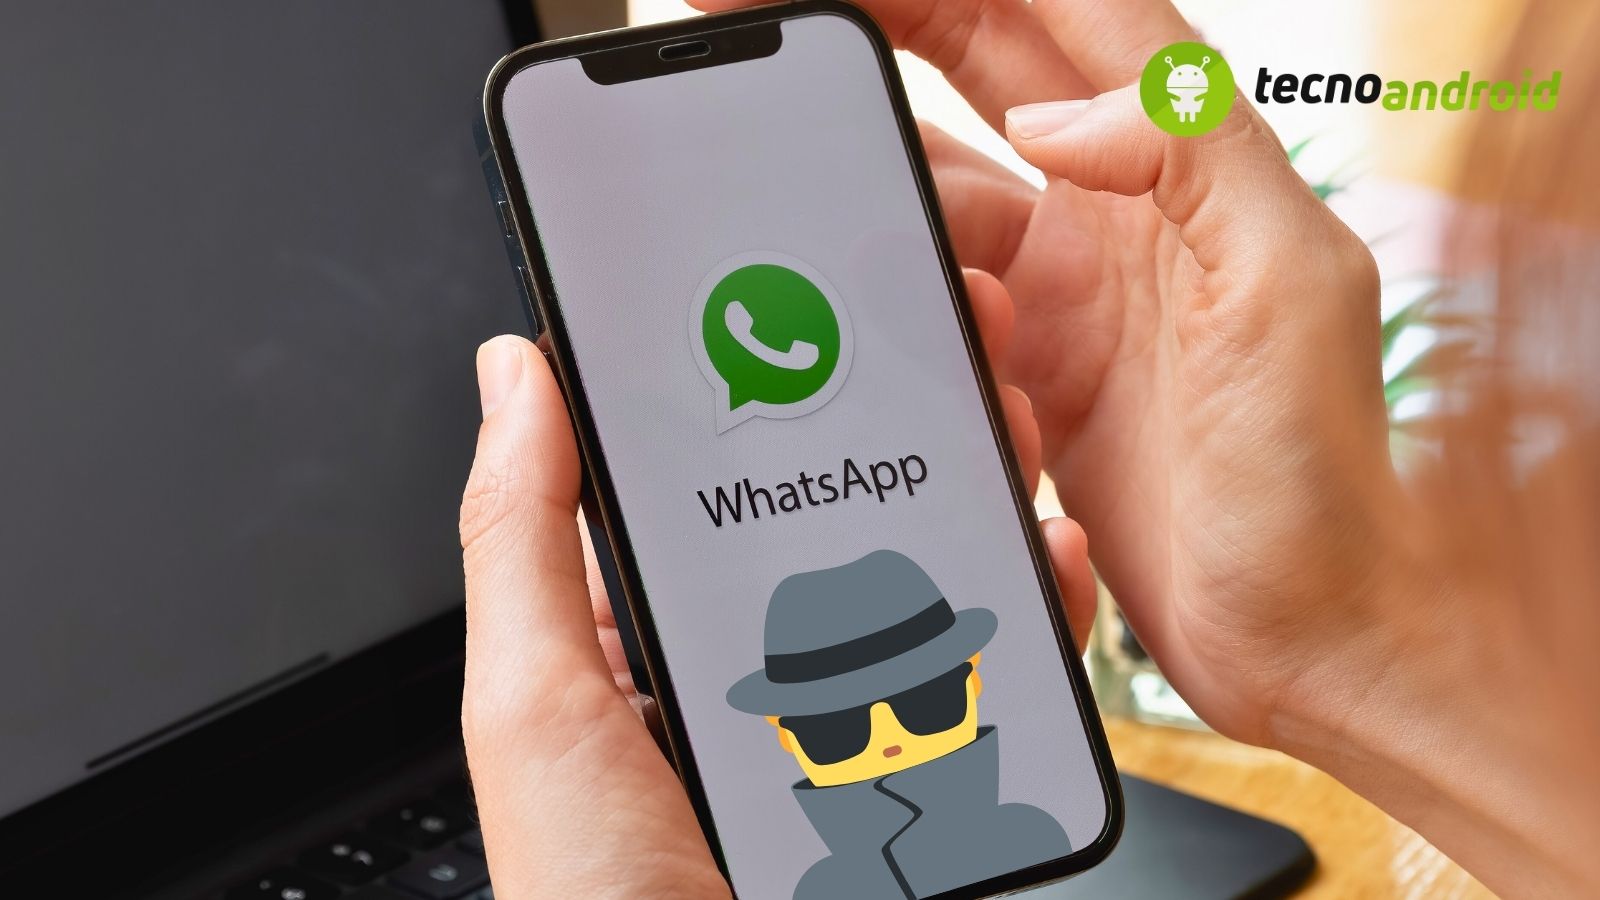 spiare su whatsapp, trucco privacy